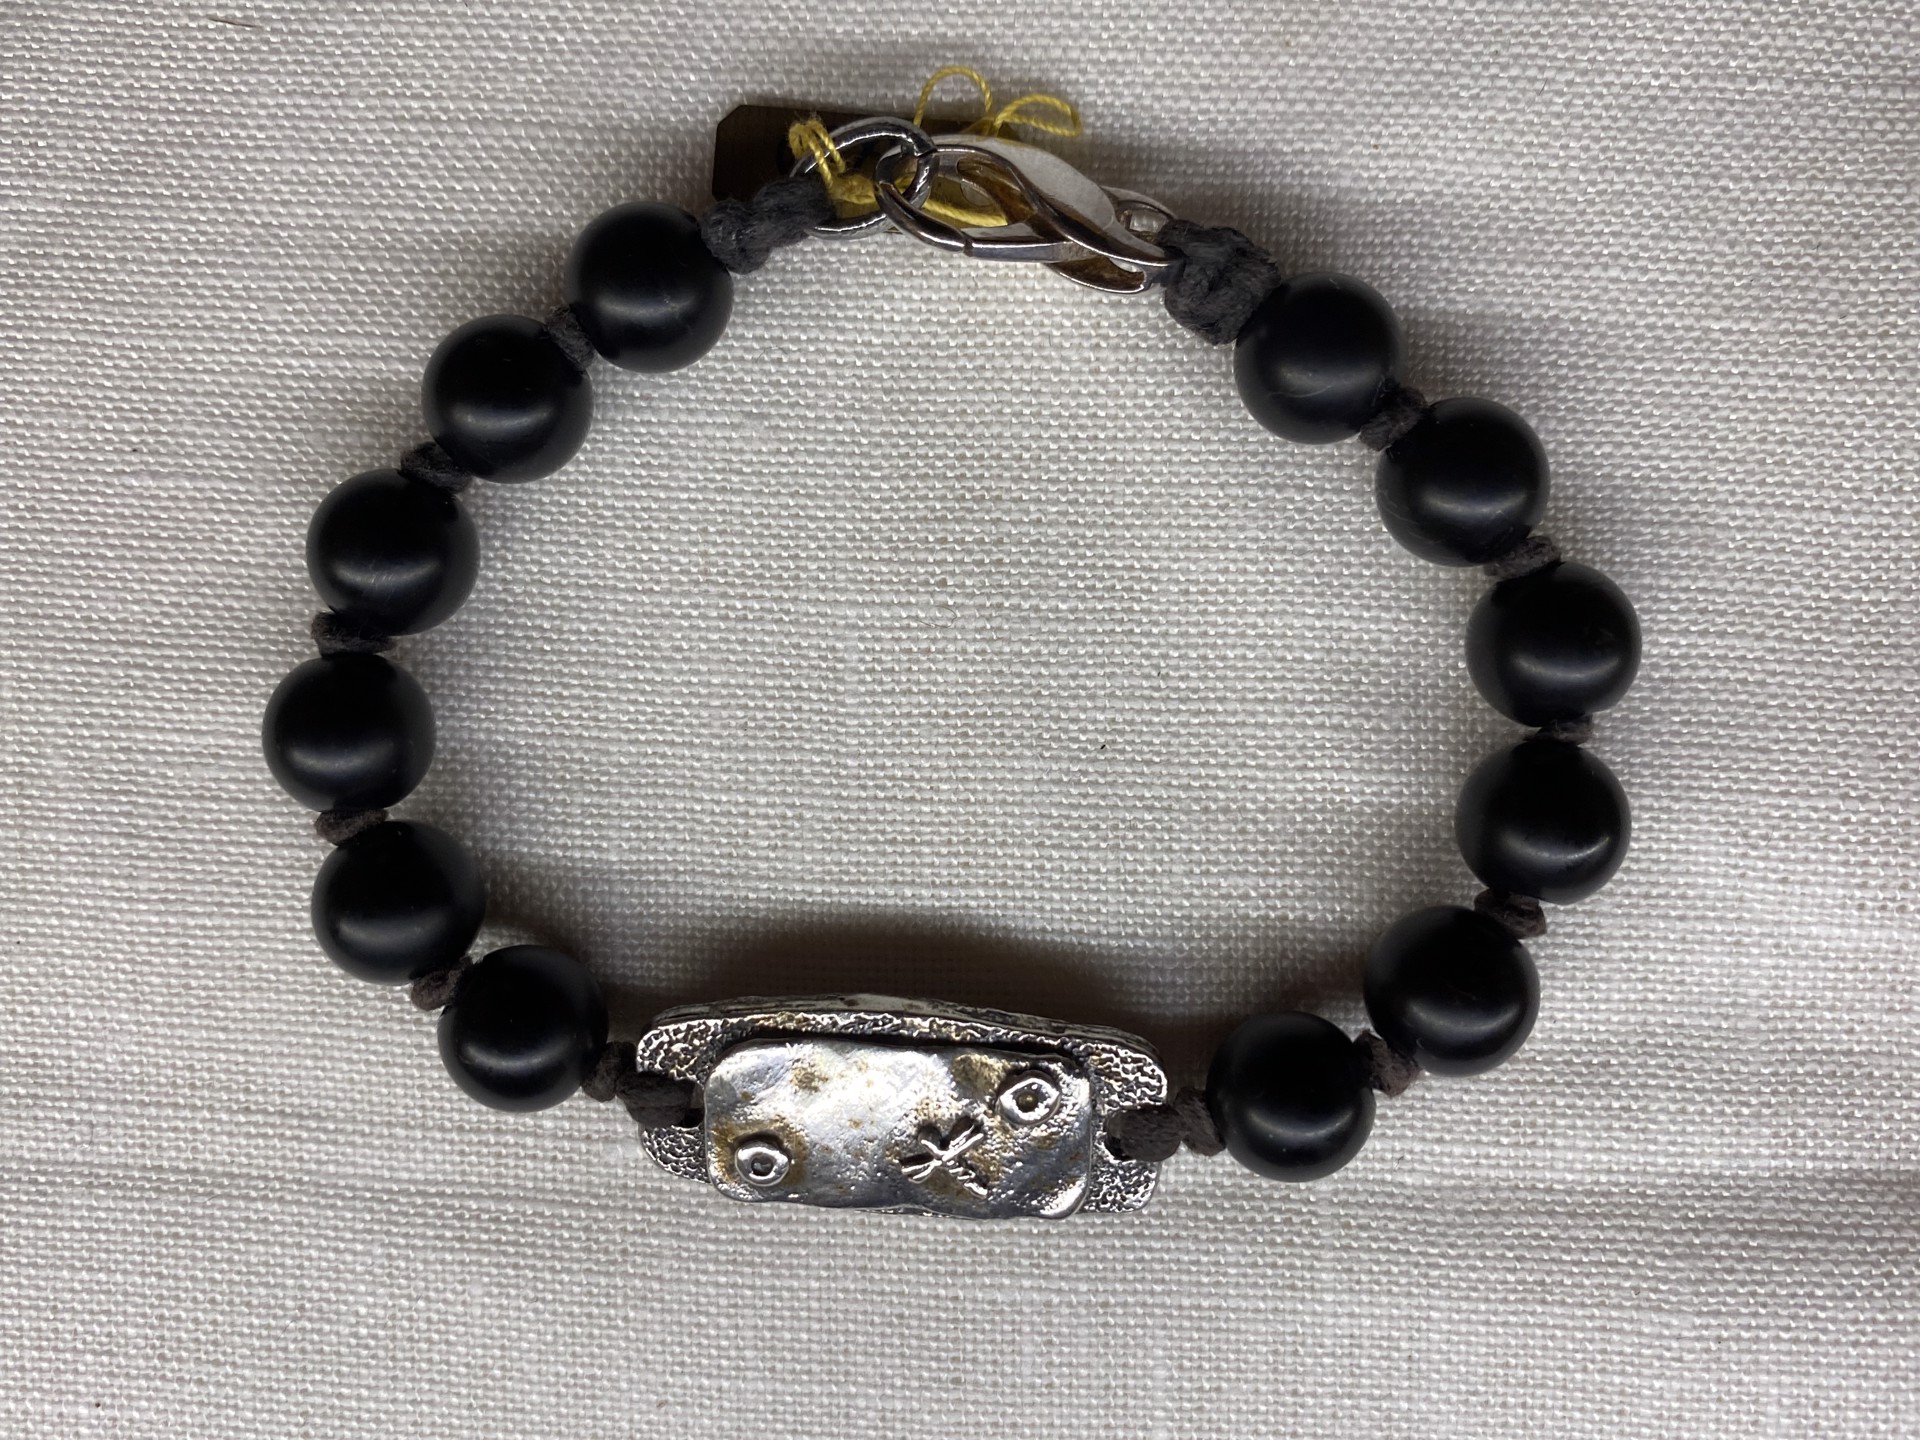 Sterling silver ingot bracelet with onyx beads by Jeri Mitrani